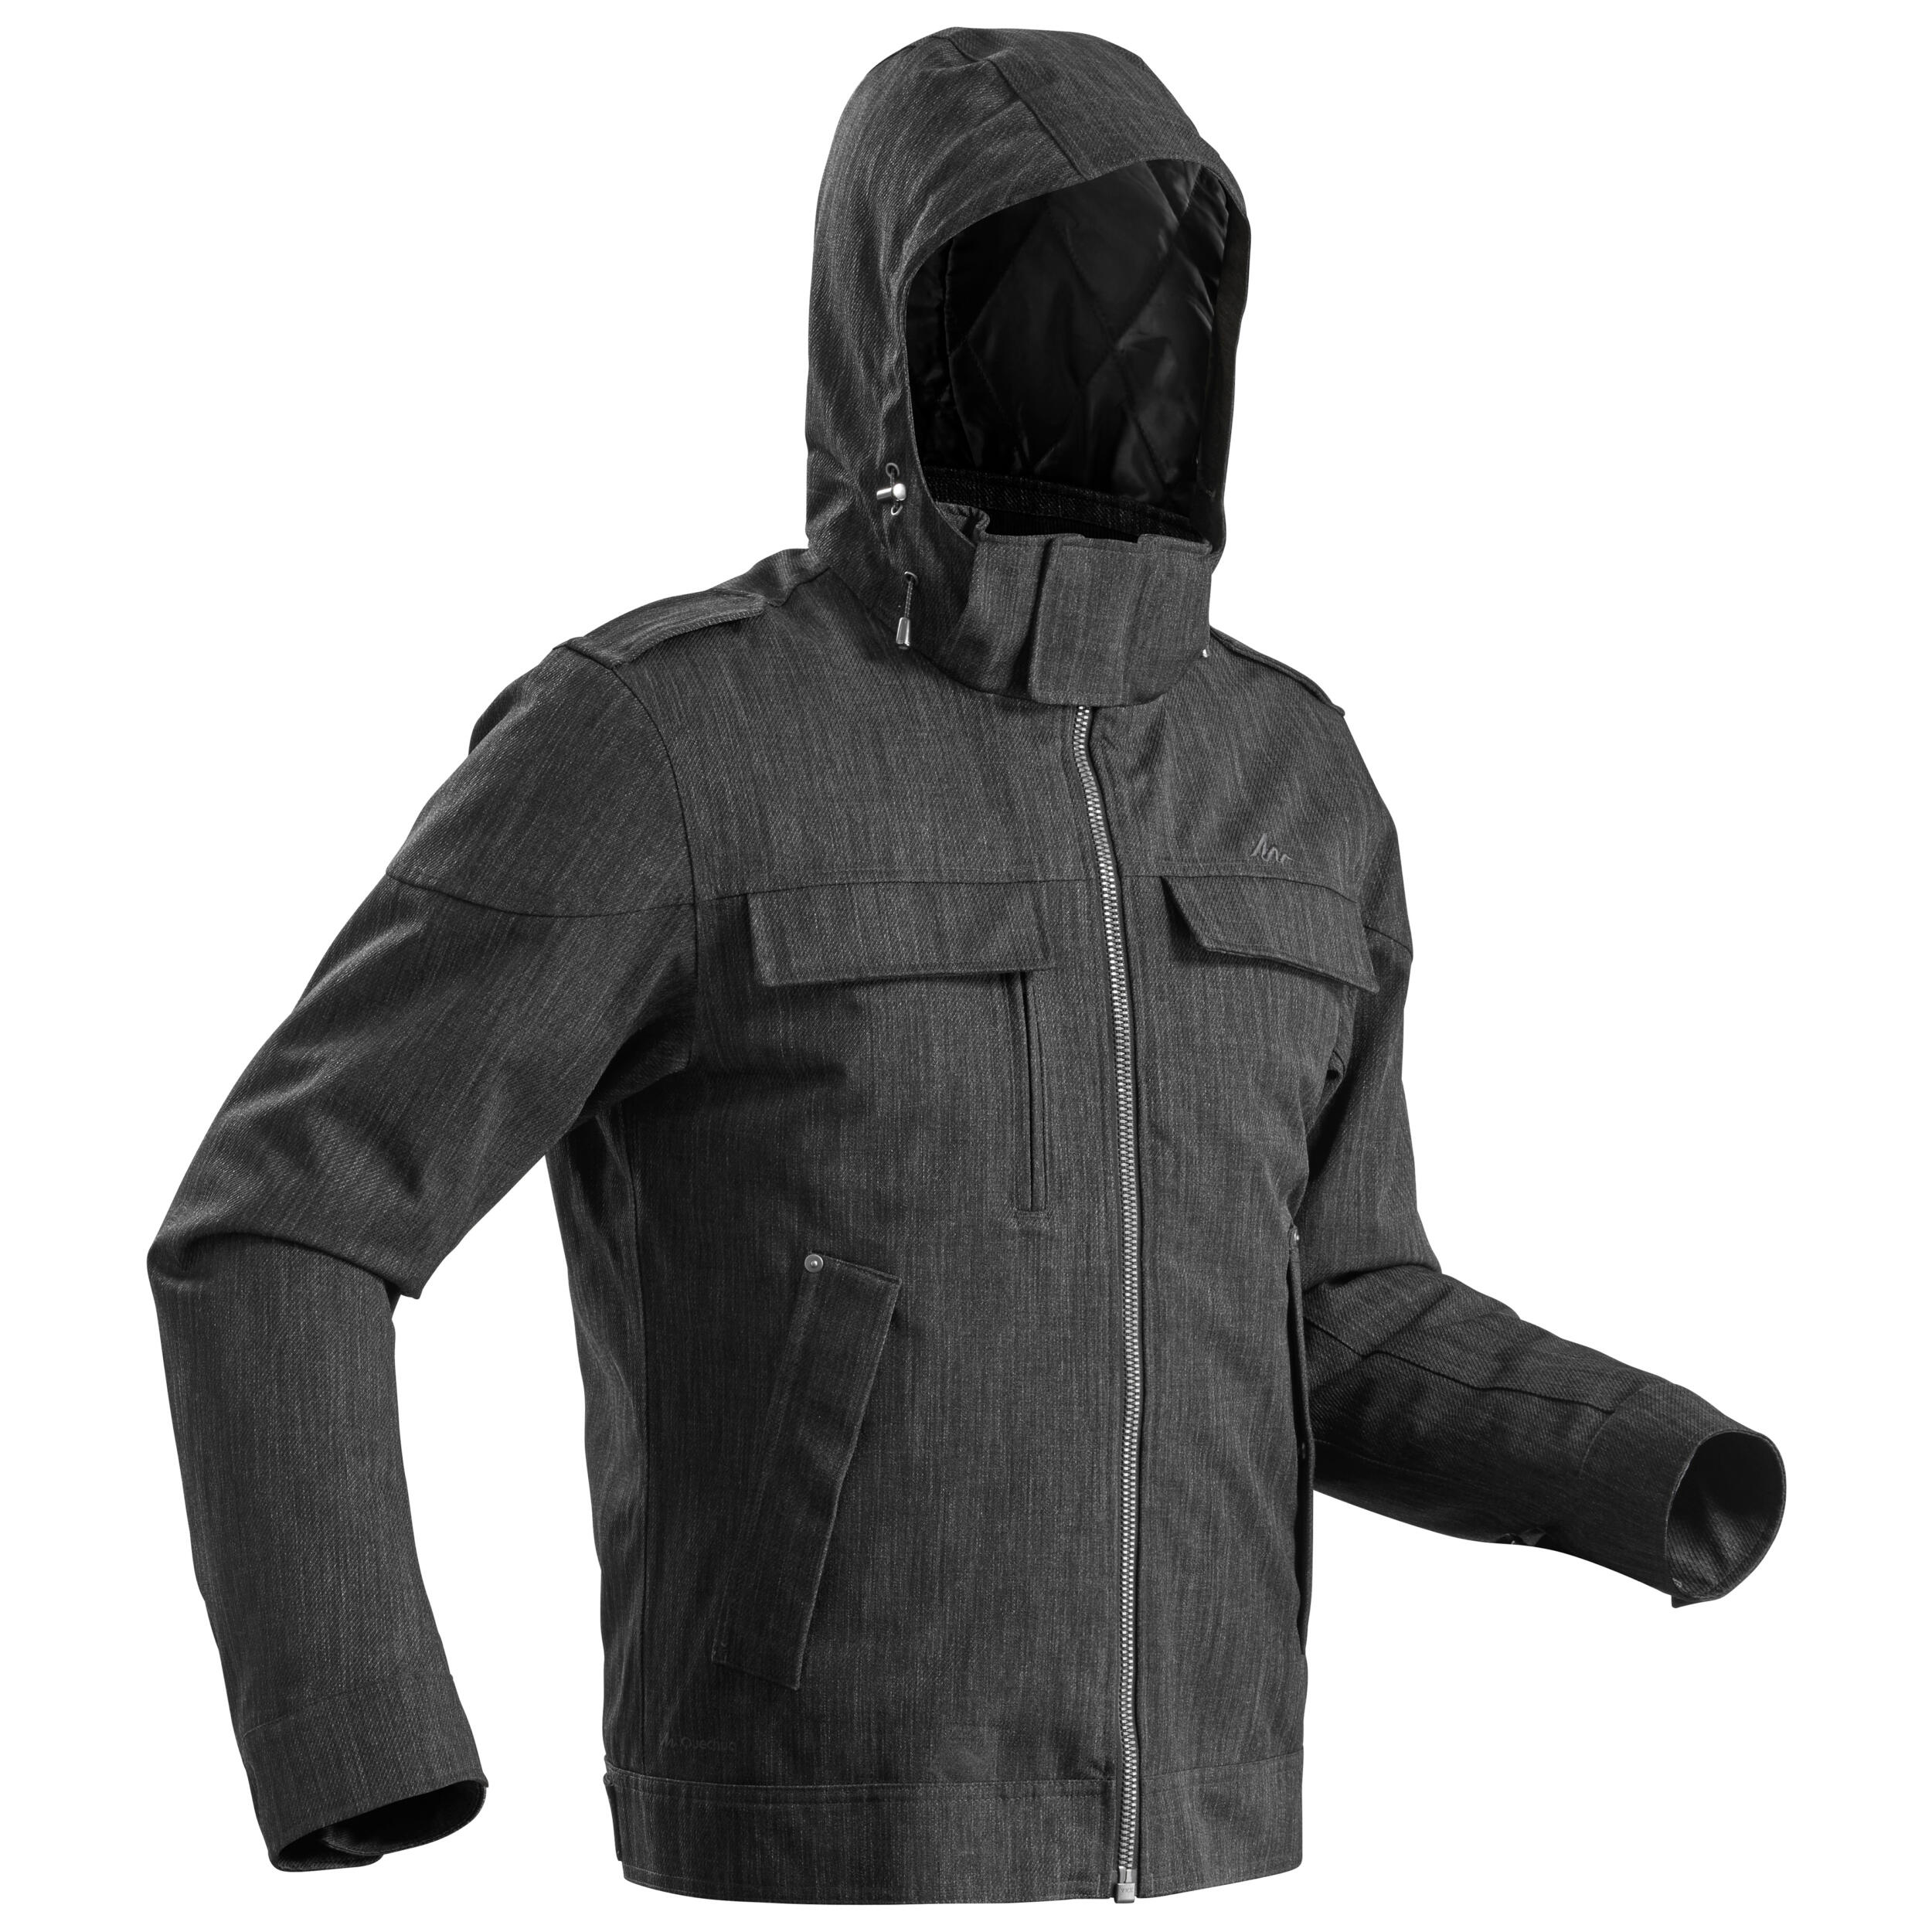 decathlon sh500 jacket